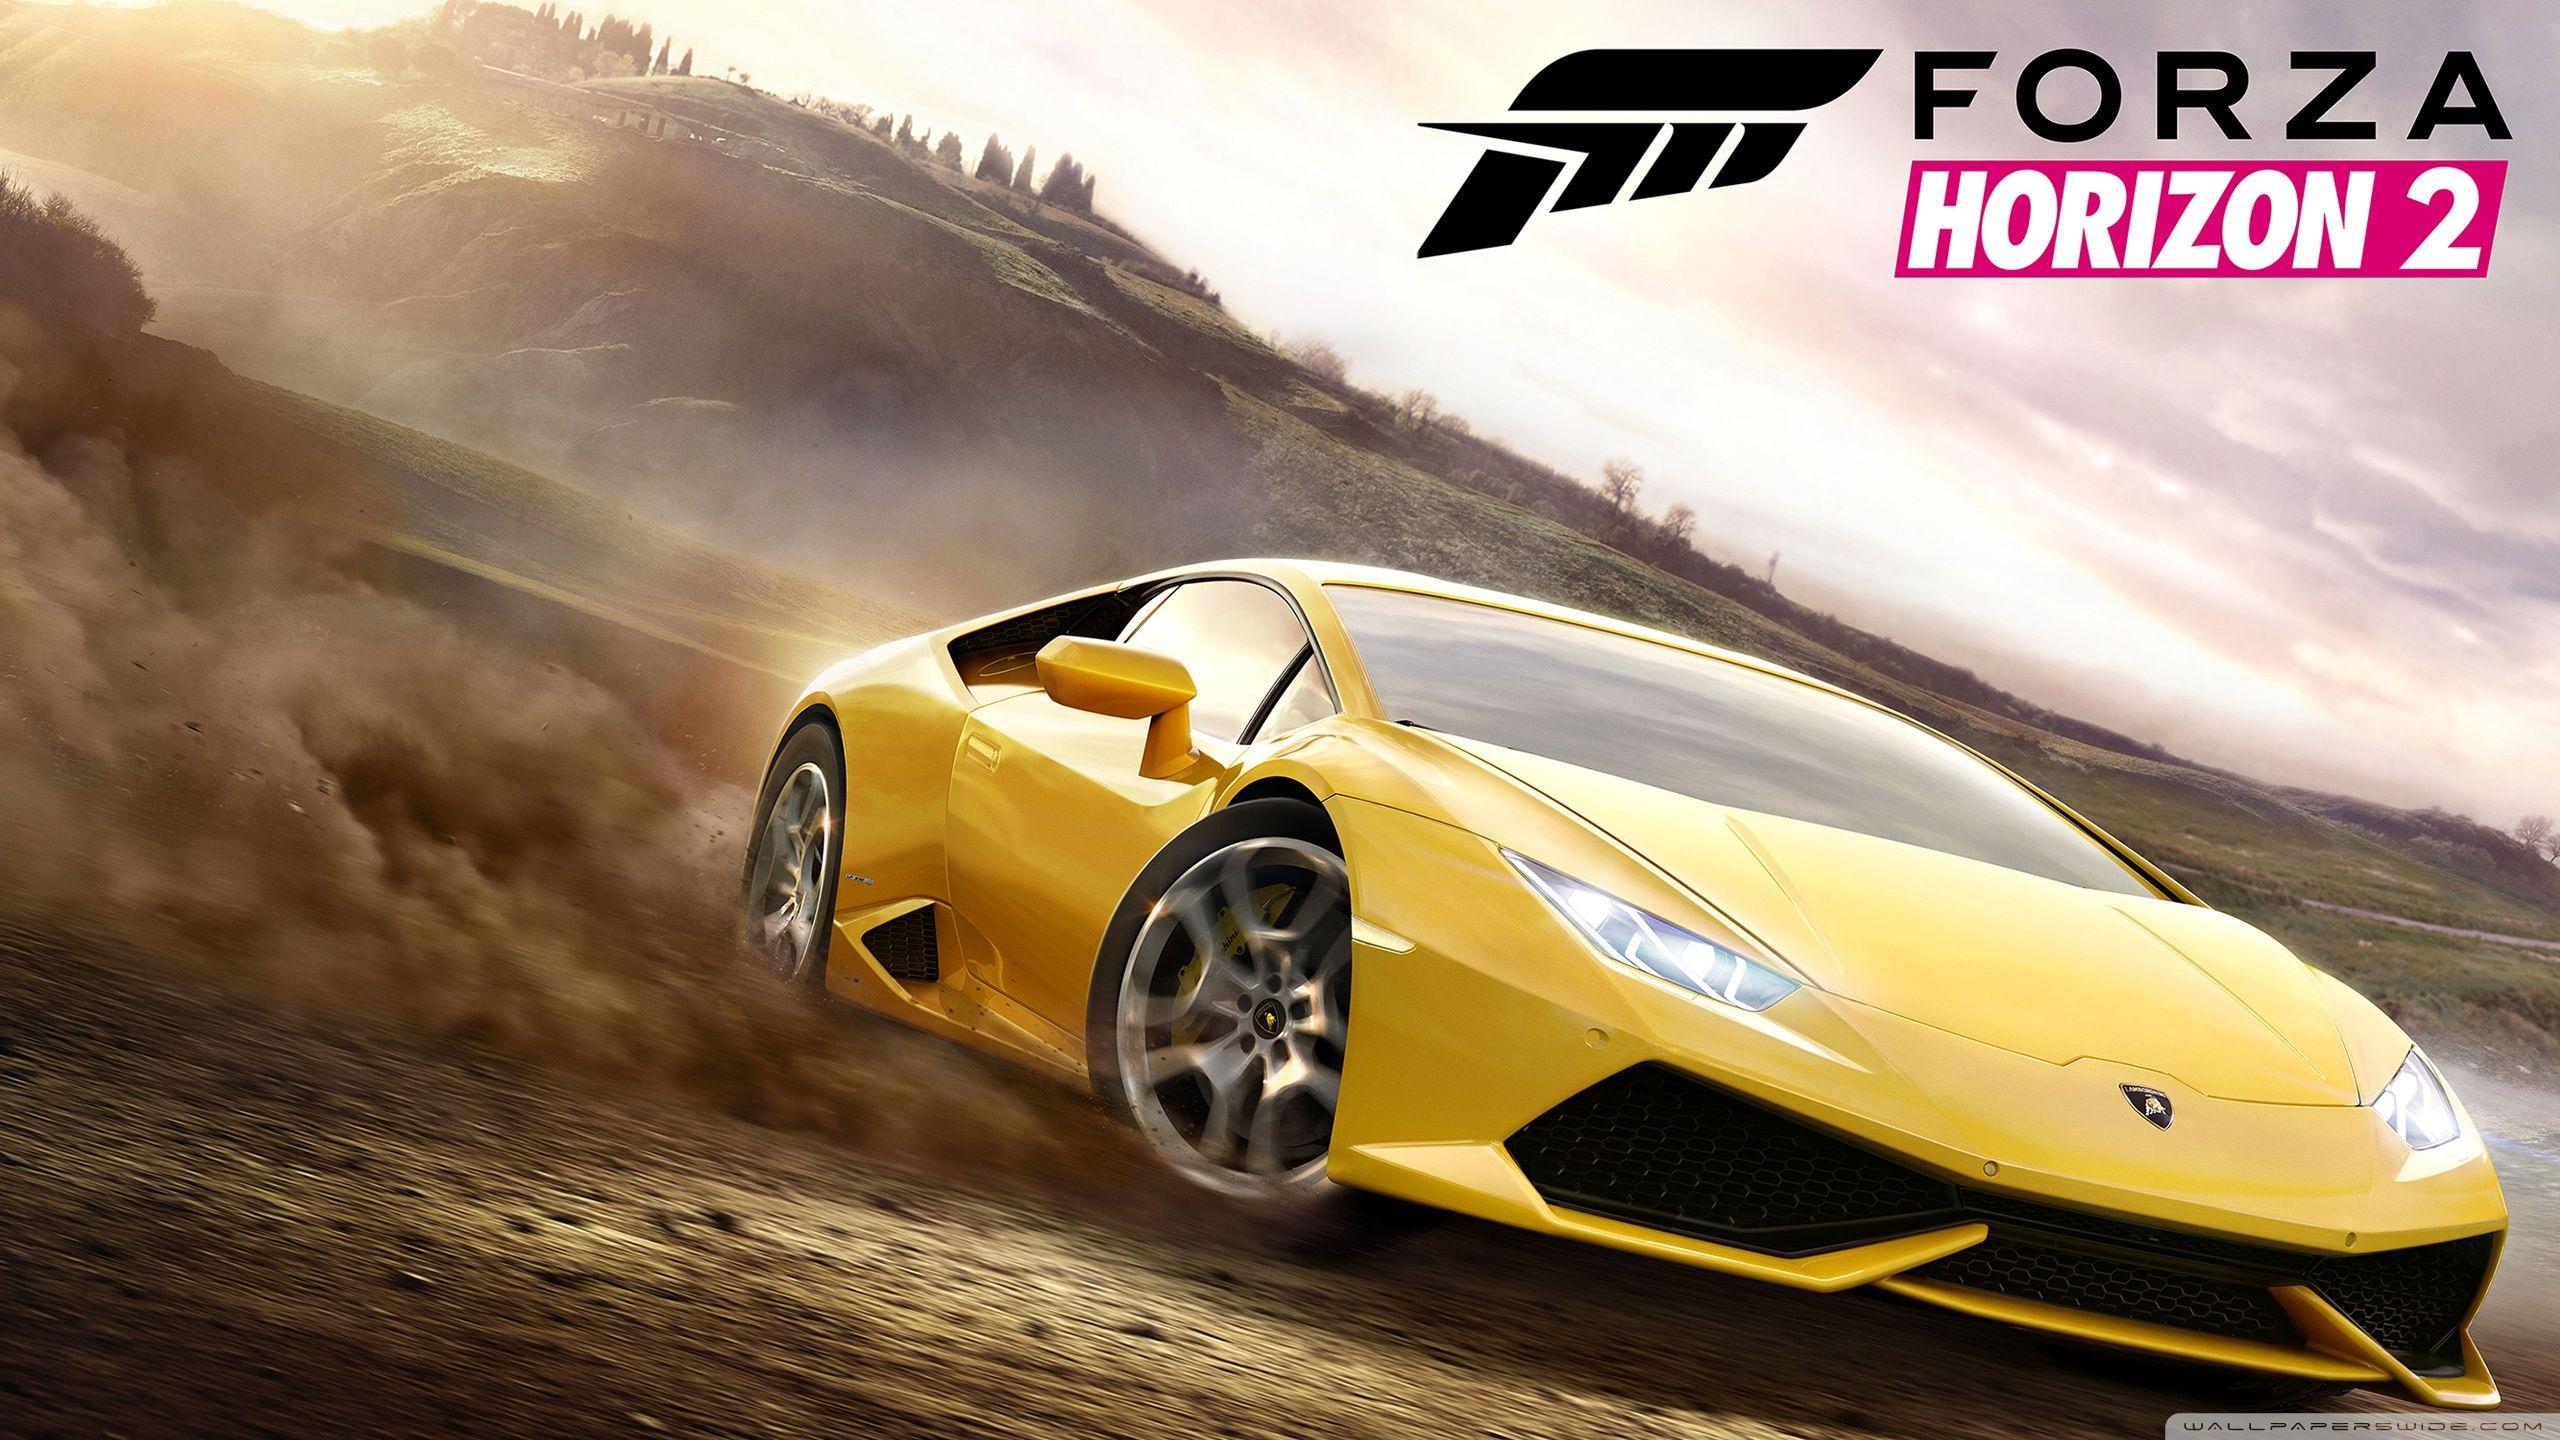 Forza Horizon 2 - Como ganhar pontos de habilidade da forma mais fácil possível